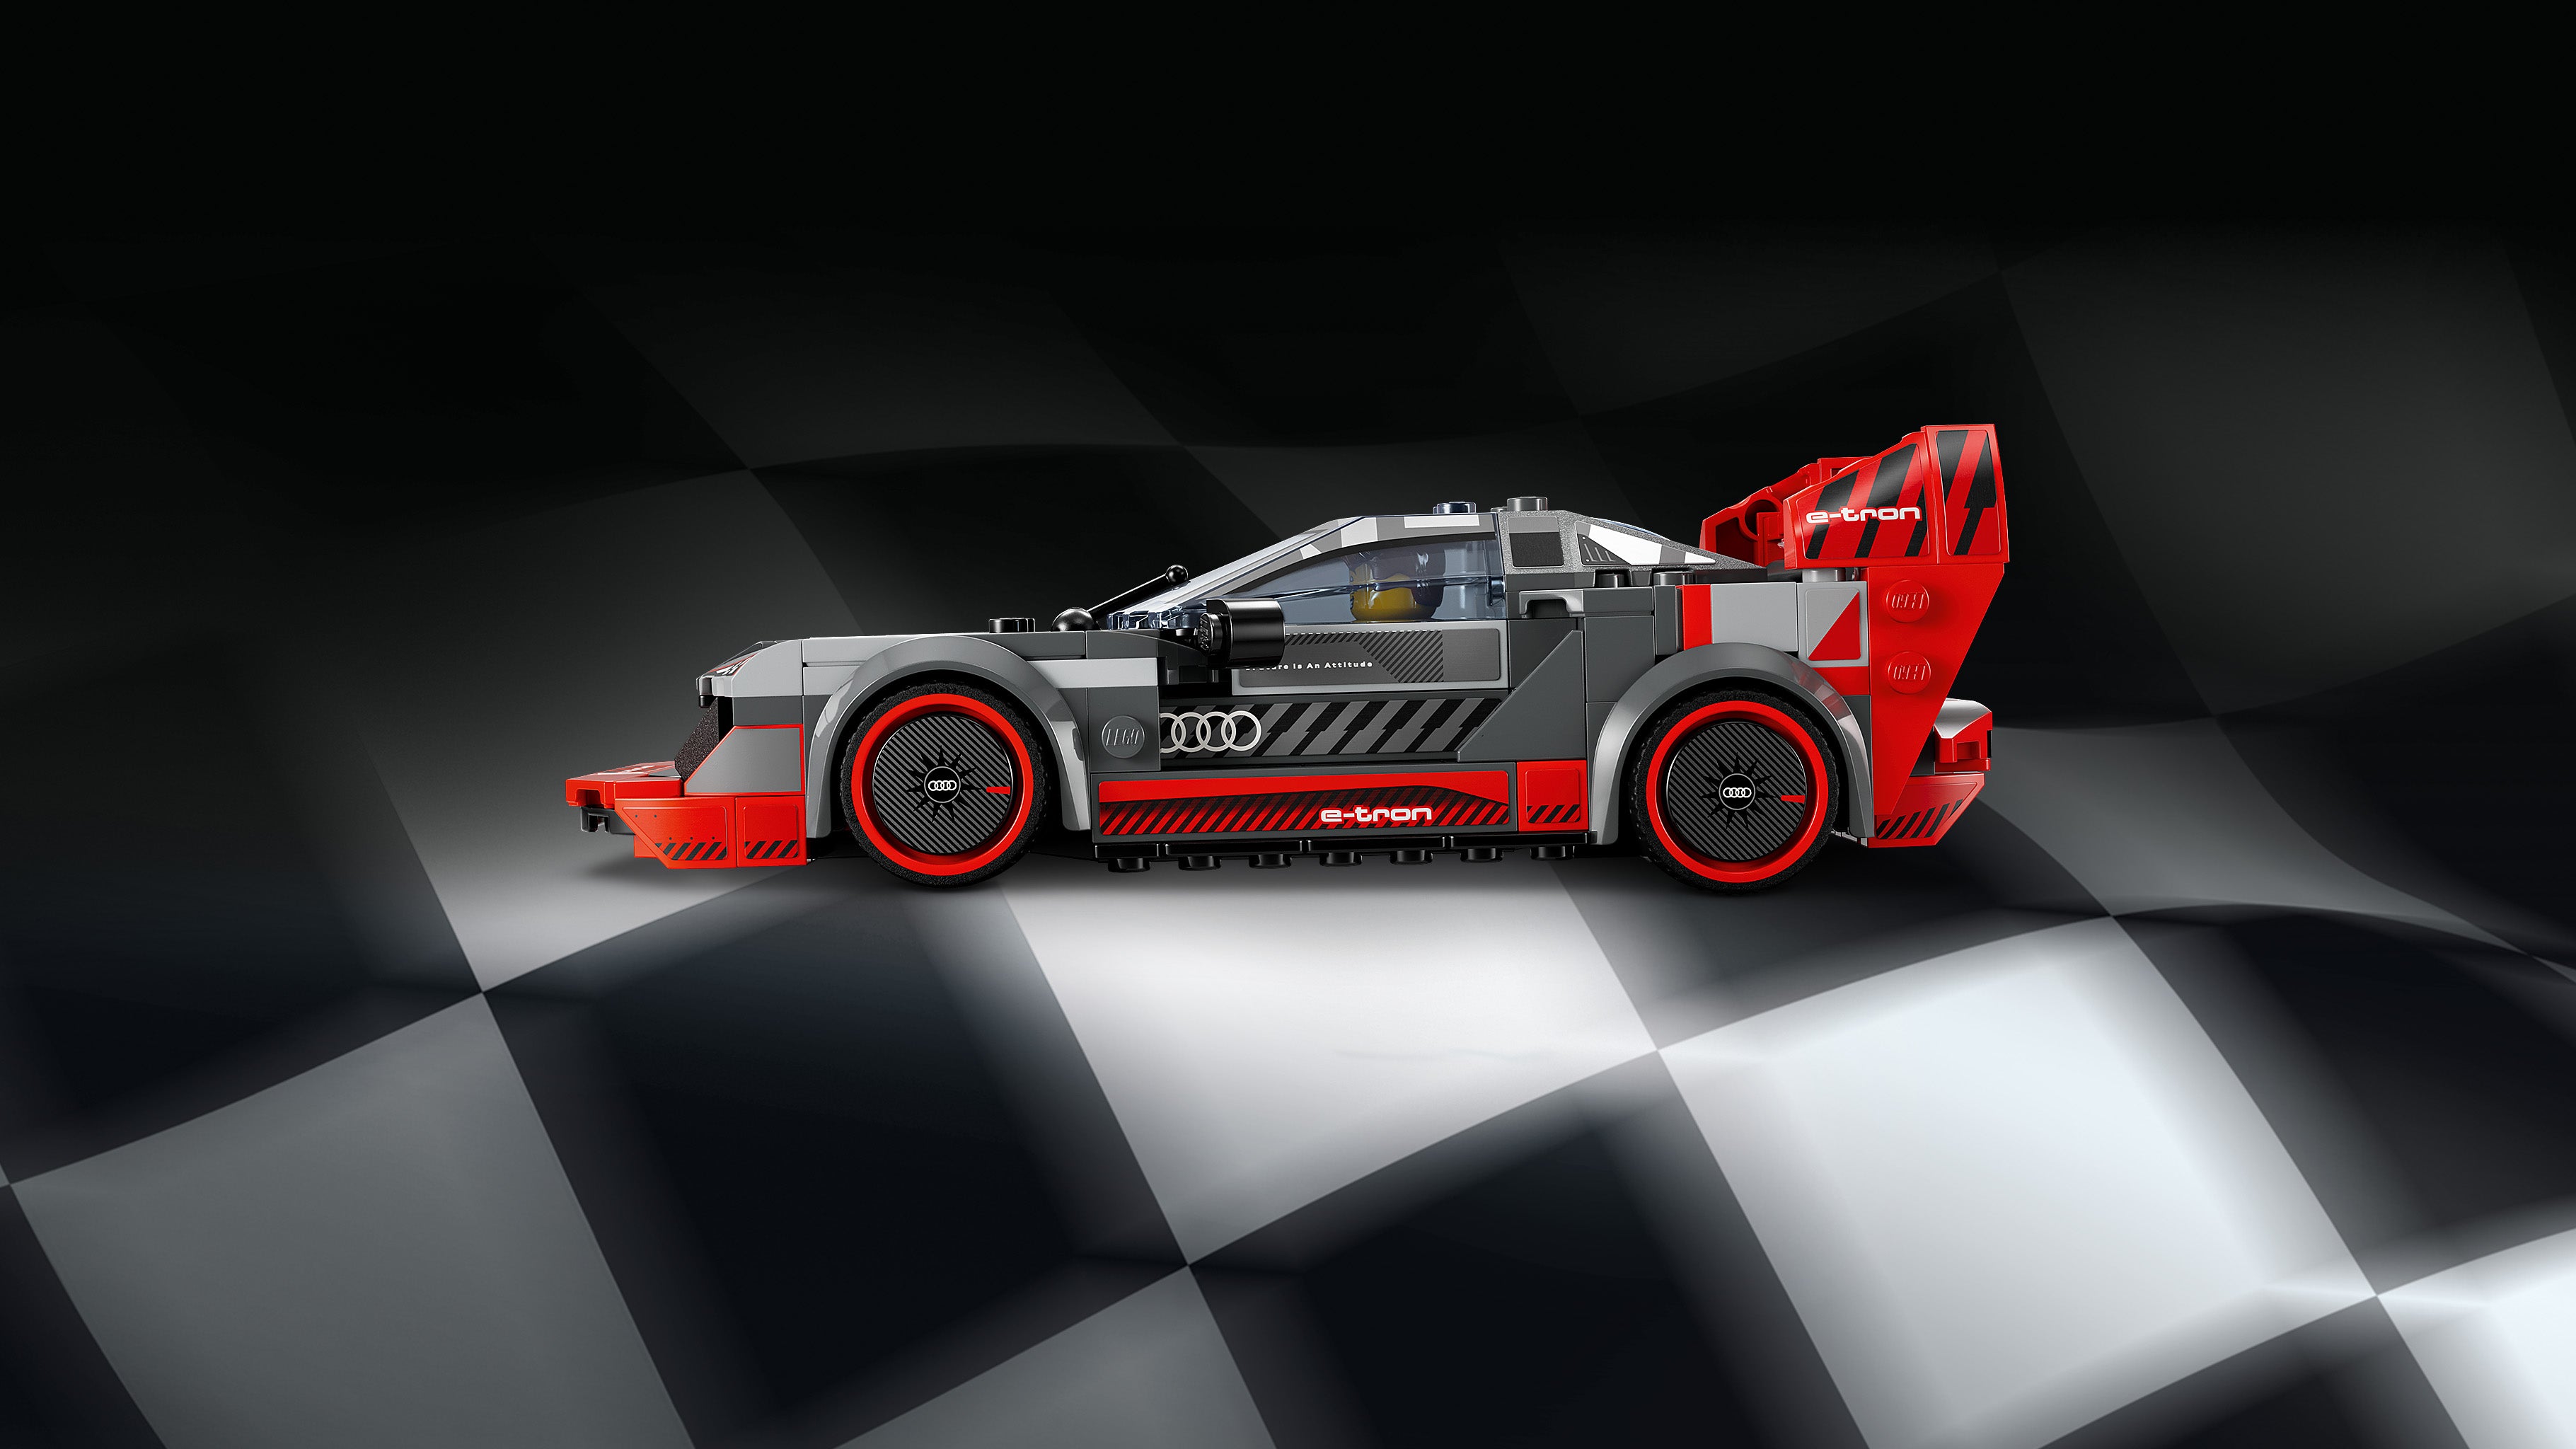 Lego 76921 Audi S1 e-tron quattro R